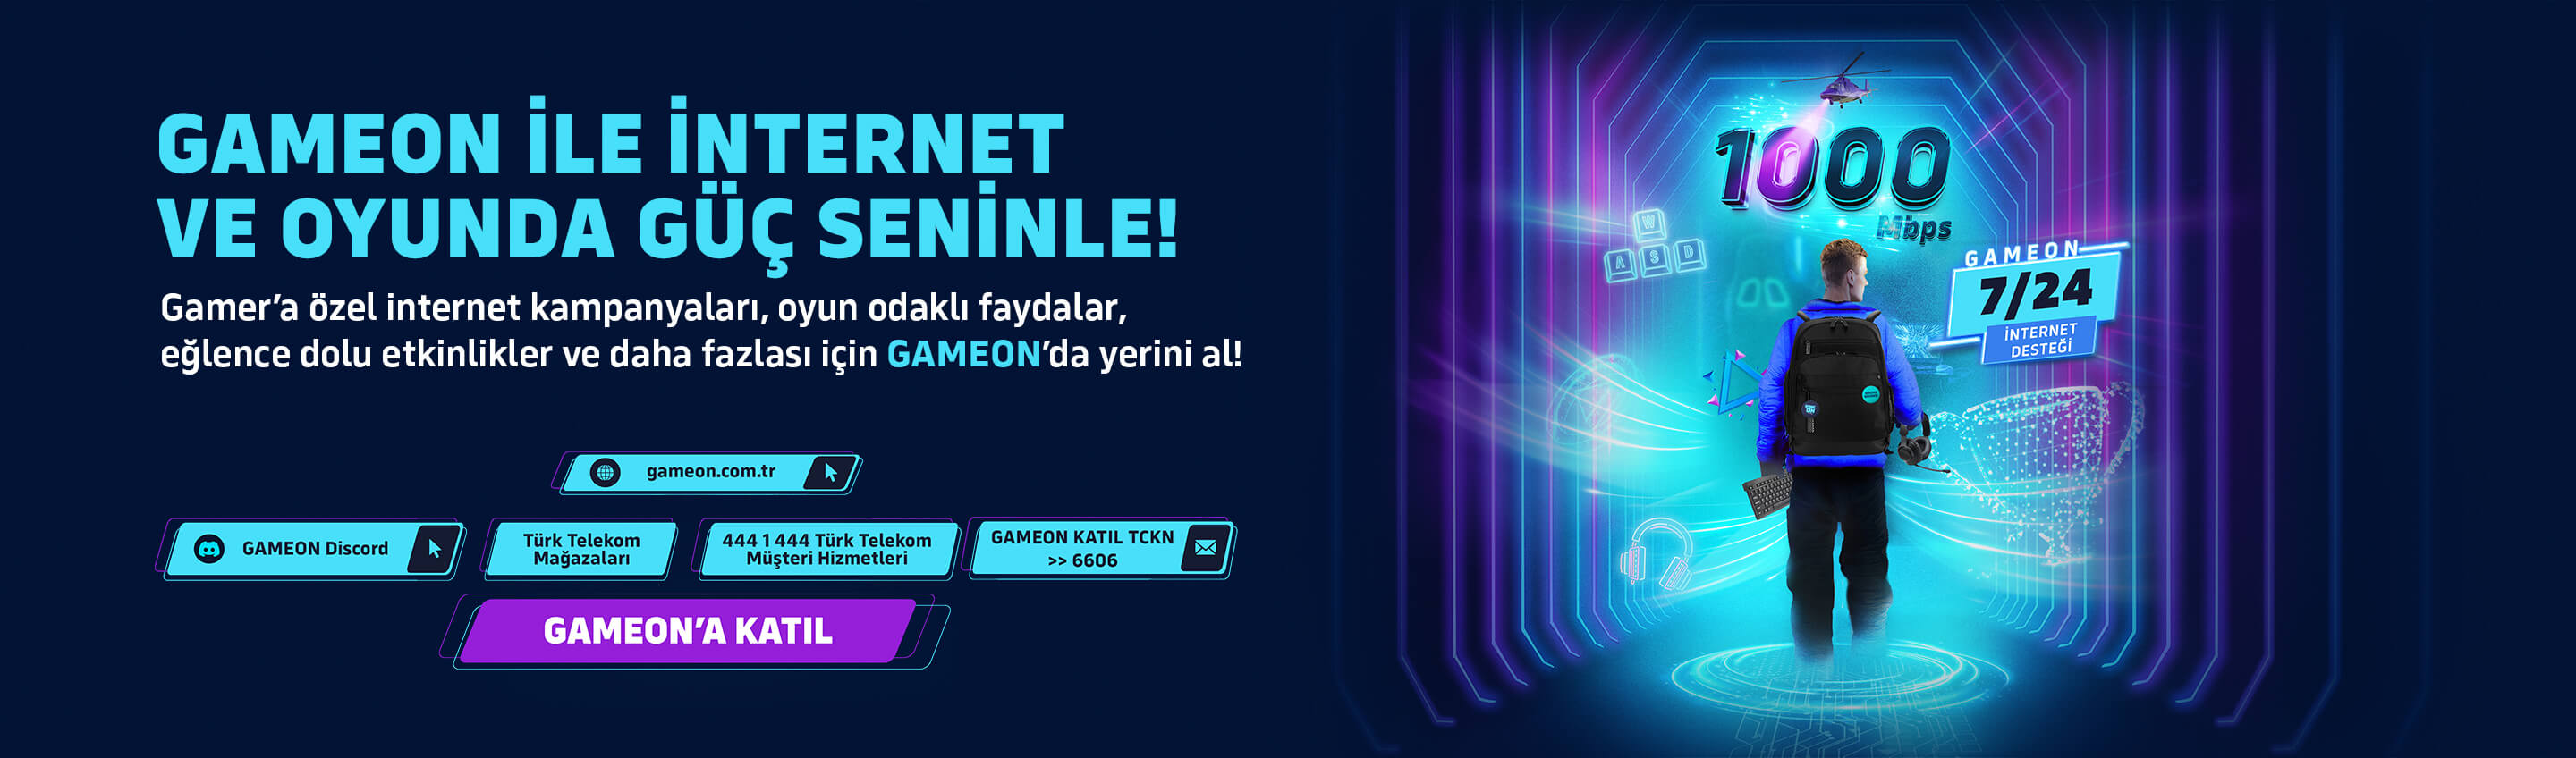 Turk Telekom Logo